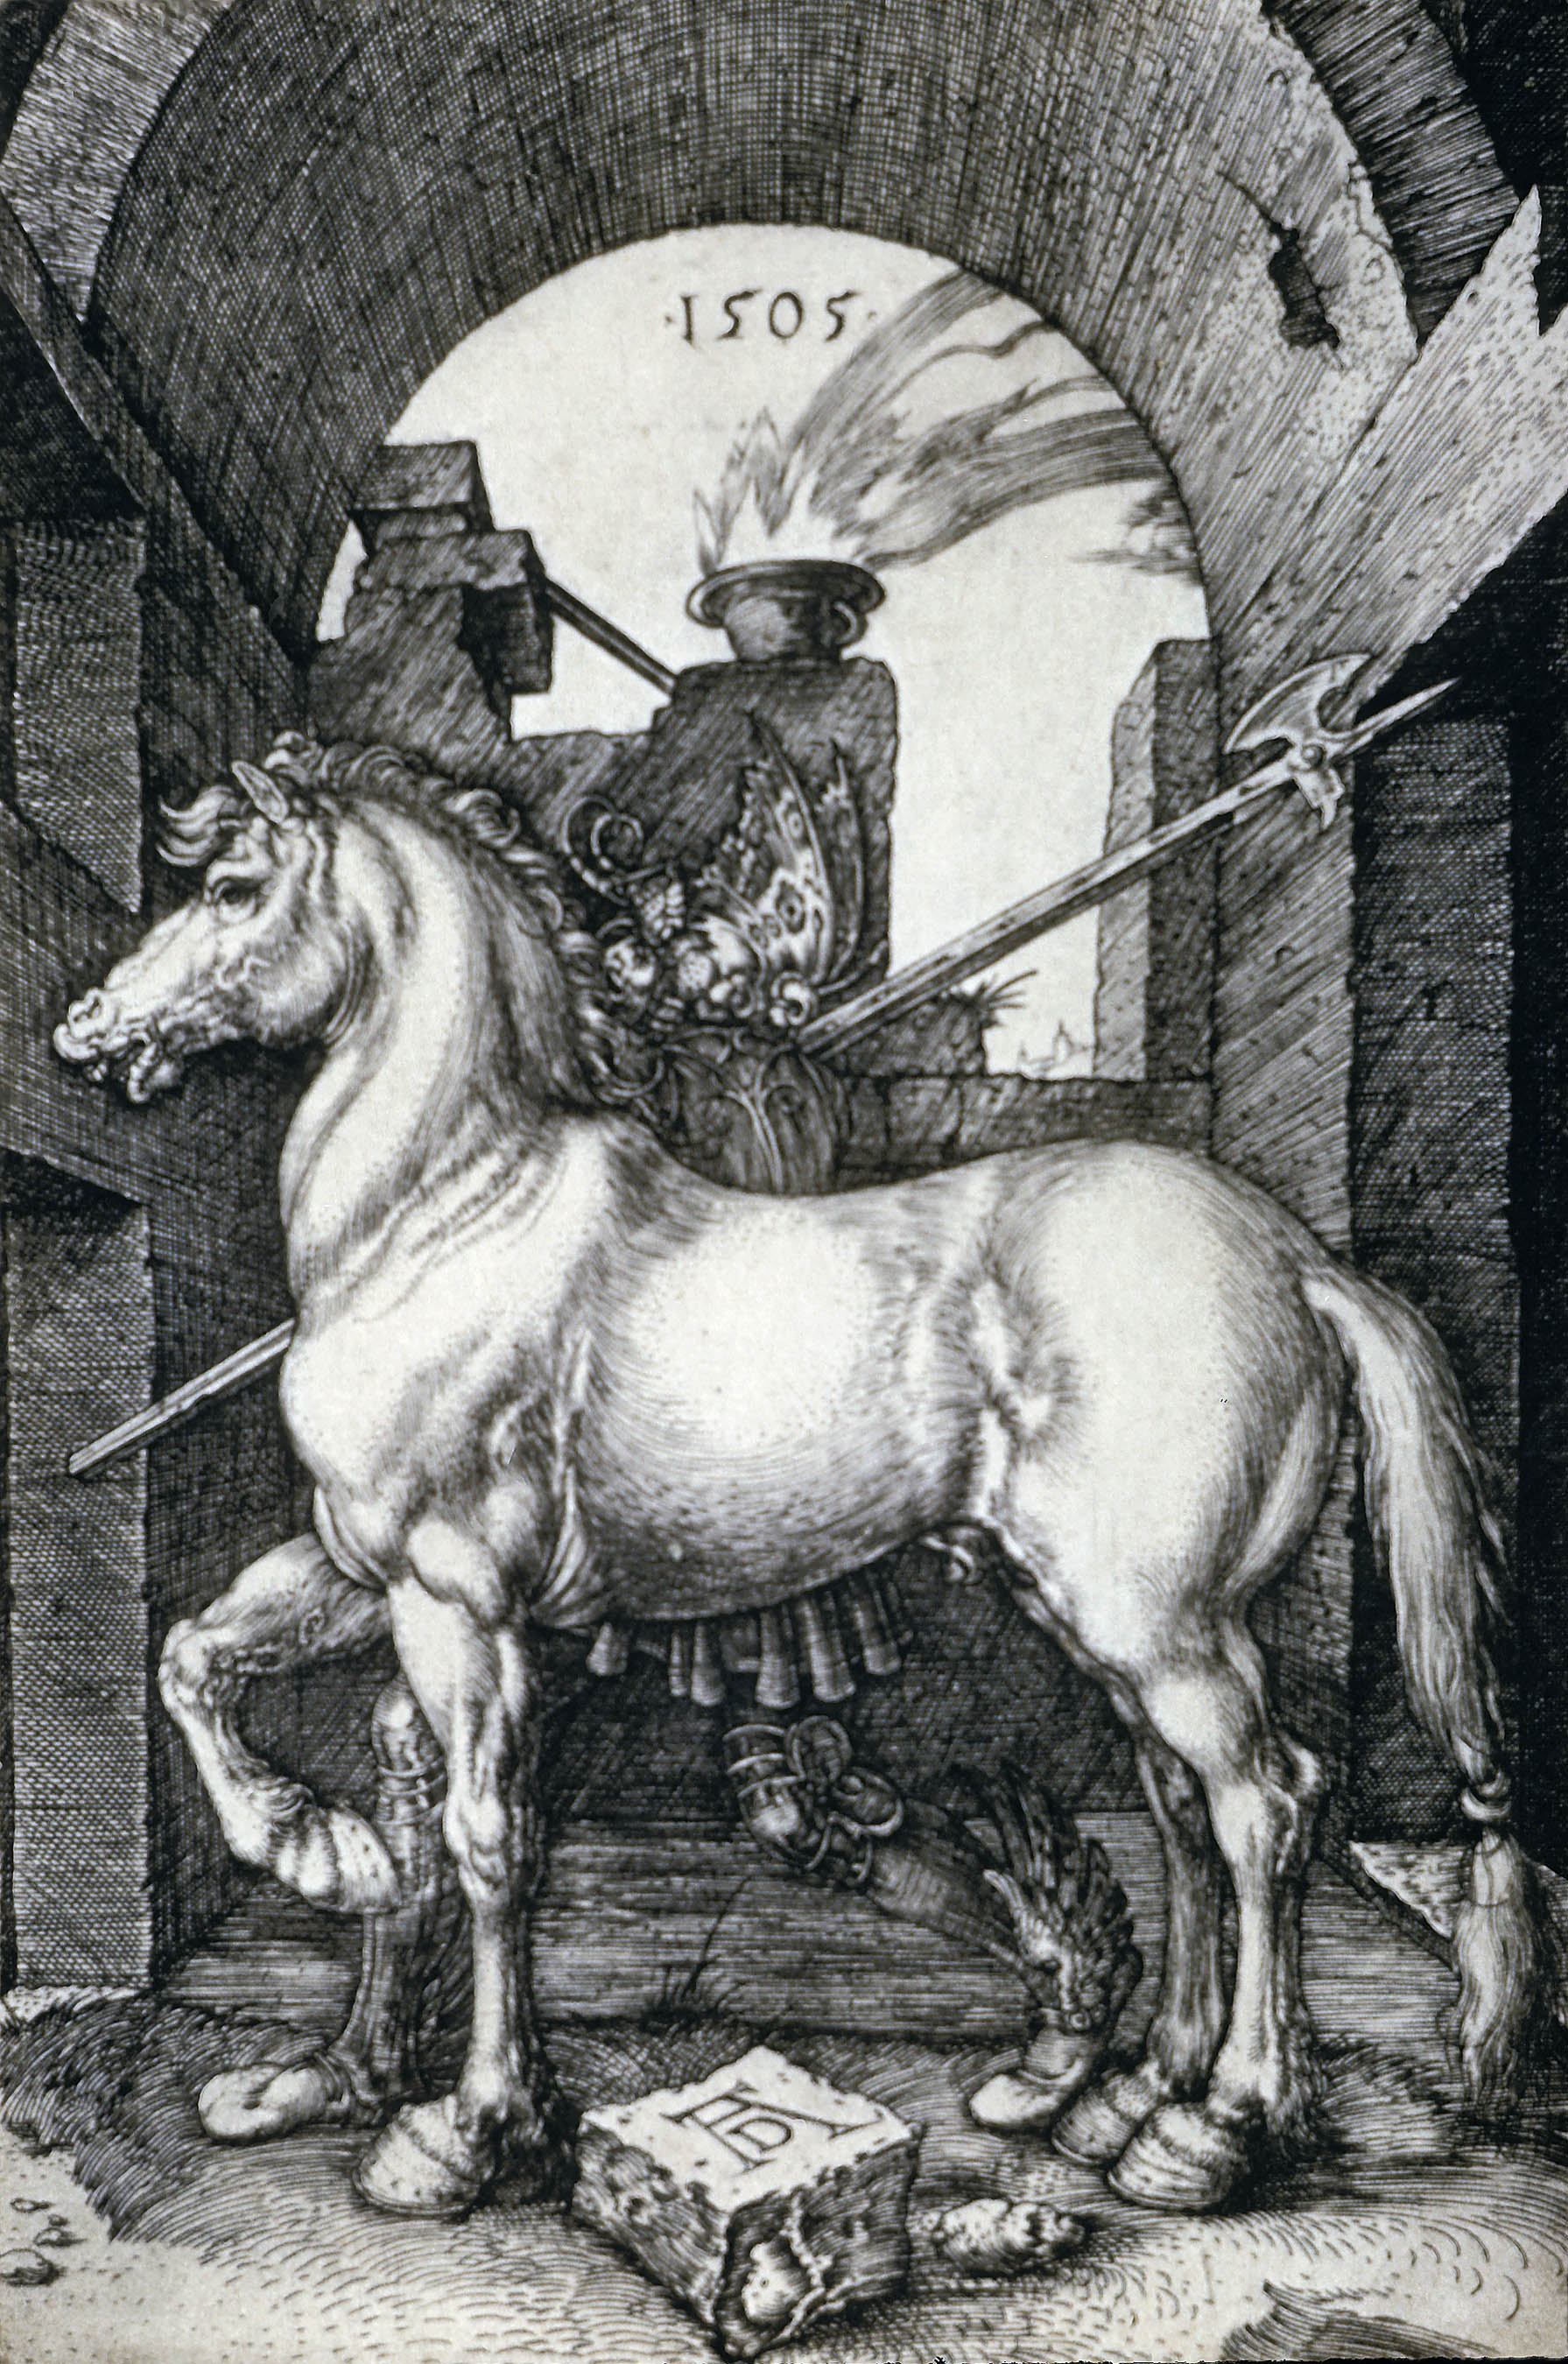 小马 by 阿尔布雷希特· 丢勒 - 1505 - - 